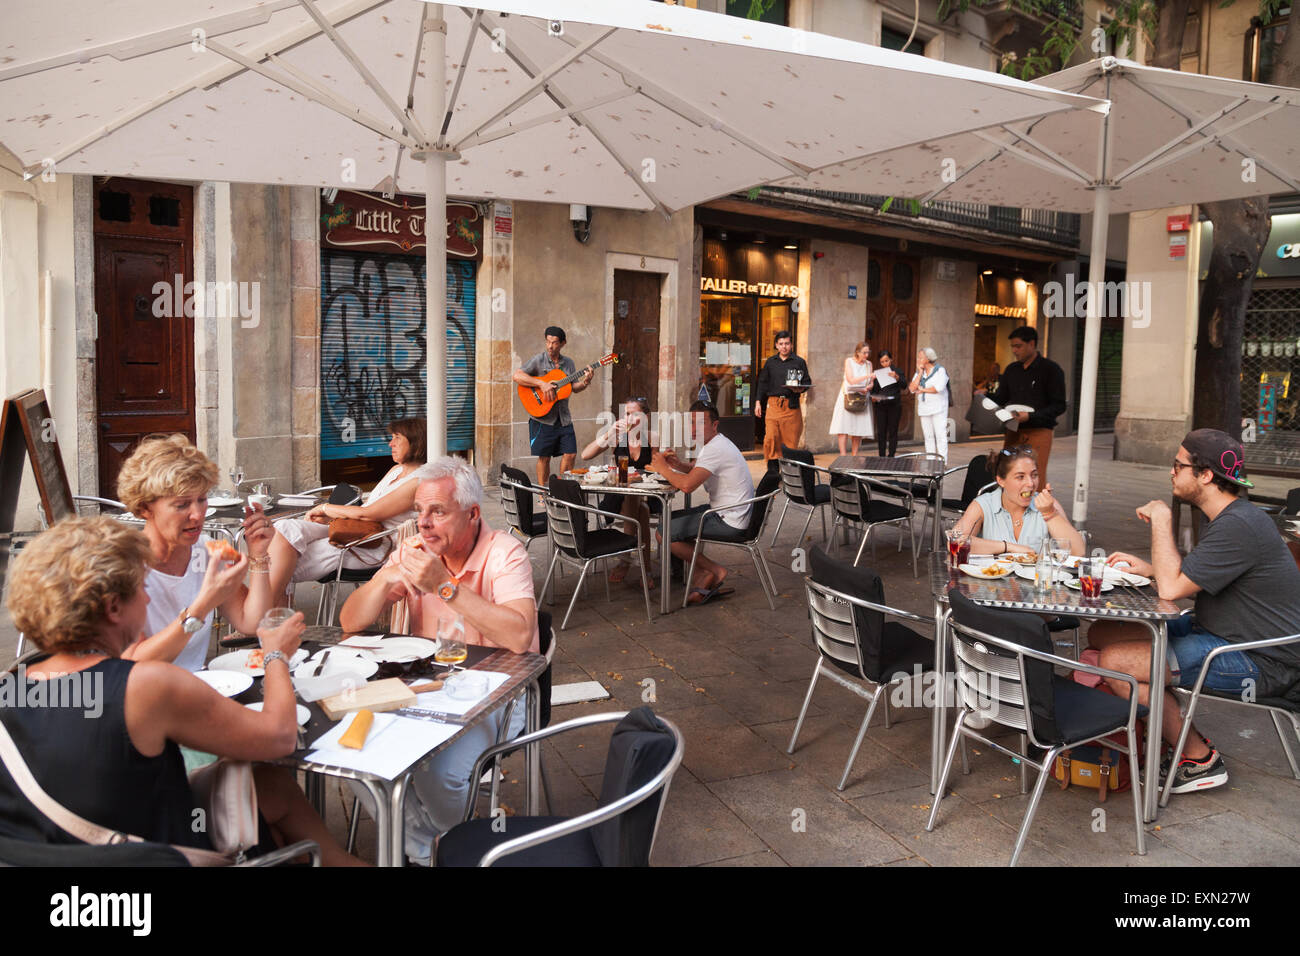 La gente seduta a mangiare e a bere alla Teller de Tapa tapas bar cafe, Barri Gotic ( Quartiere Gotico ), Barcelona, Spagna Europa Foto Stock